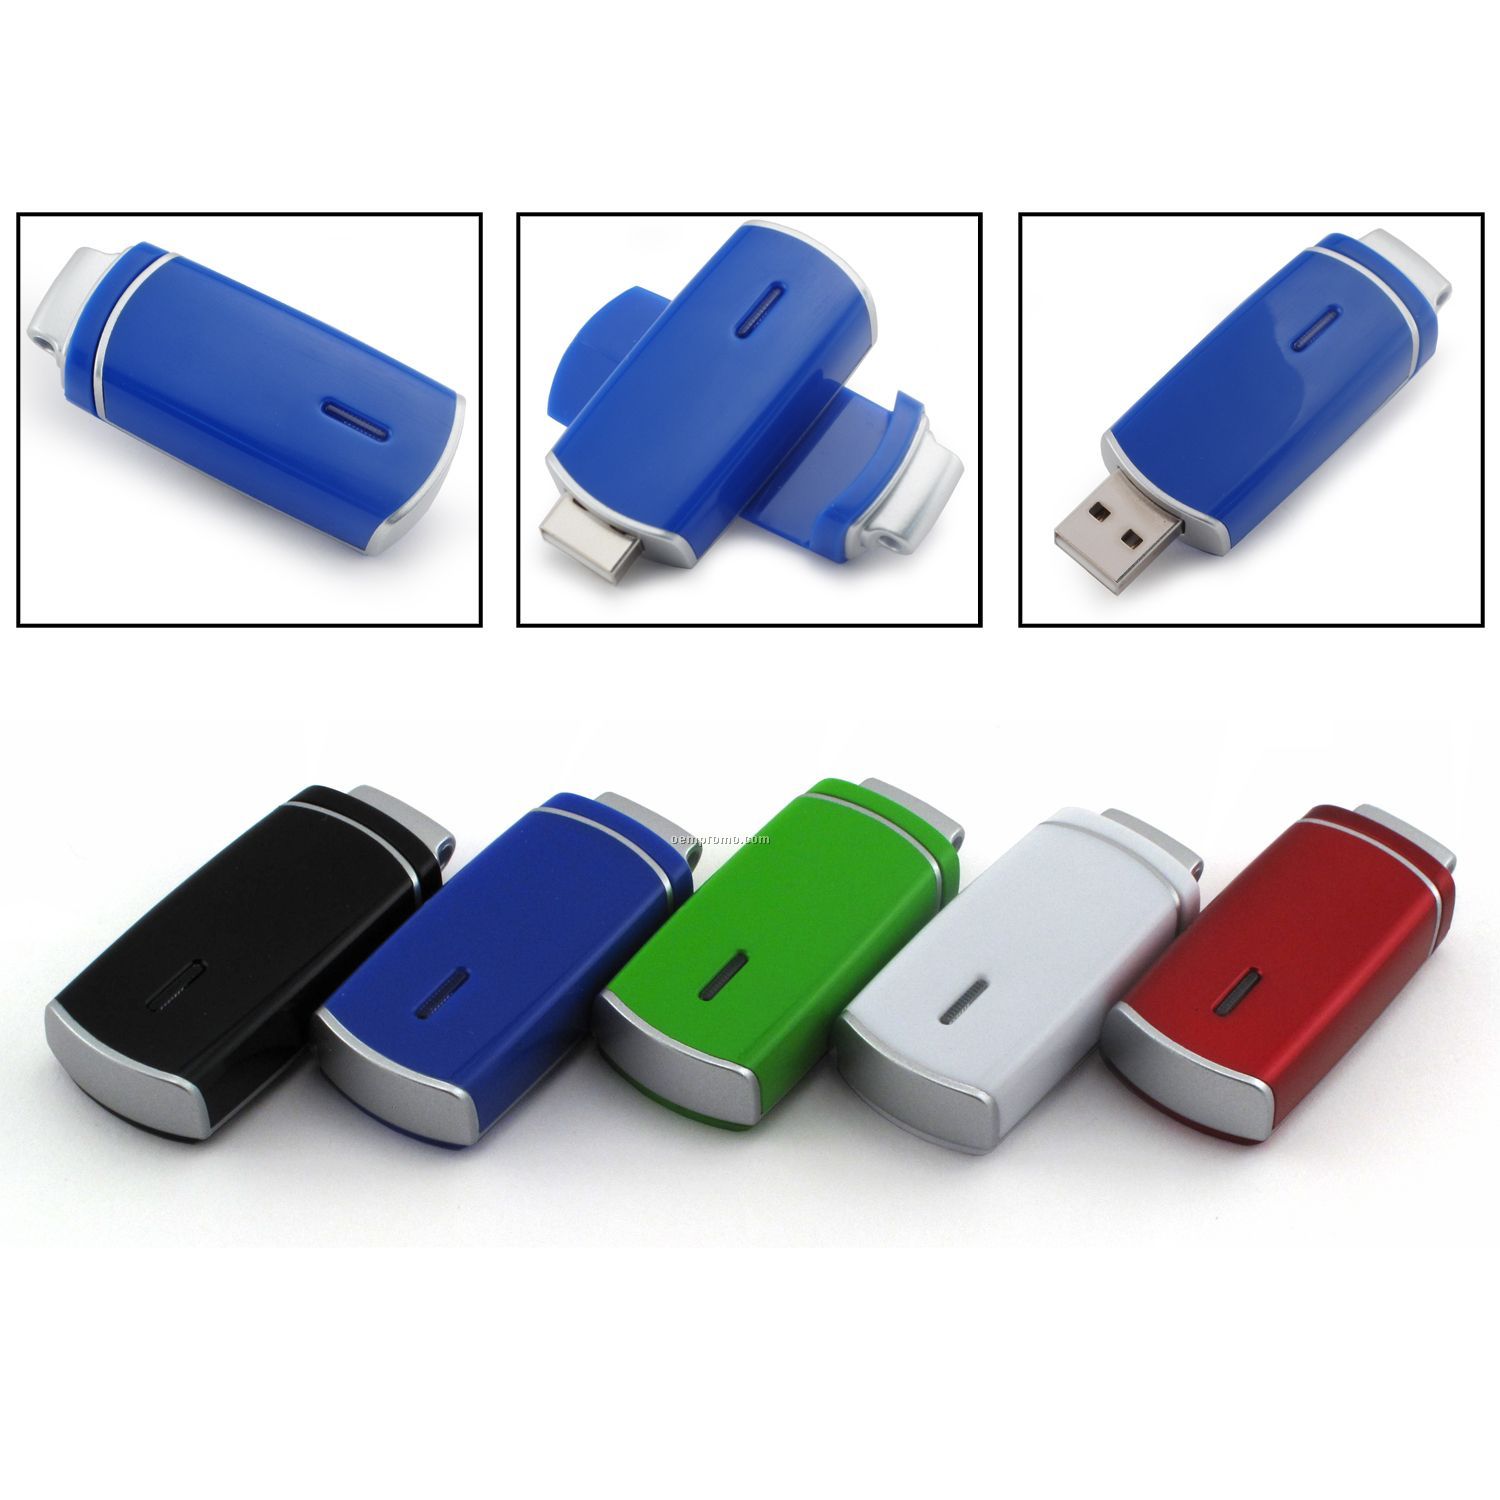 8 Gb USB Swivel 1200 Series